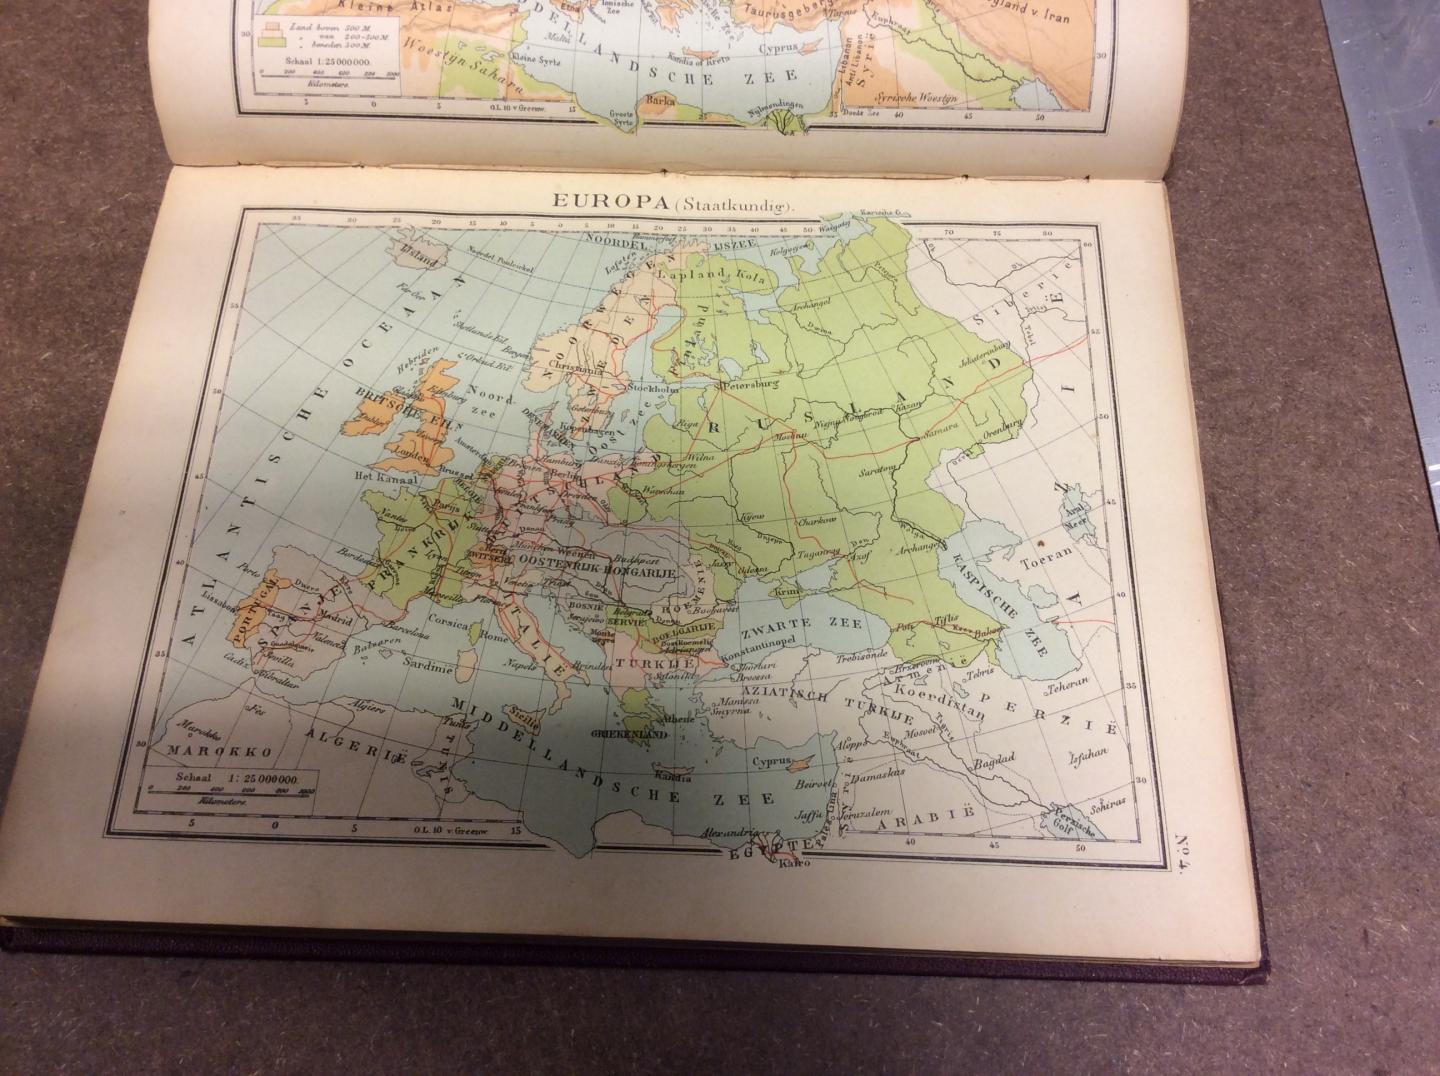 HAVE, J.J. TEN - Volledige School-Atlas. (Op de rug: J.J. ten Have School-Atlas)